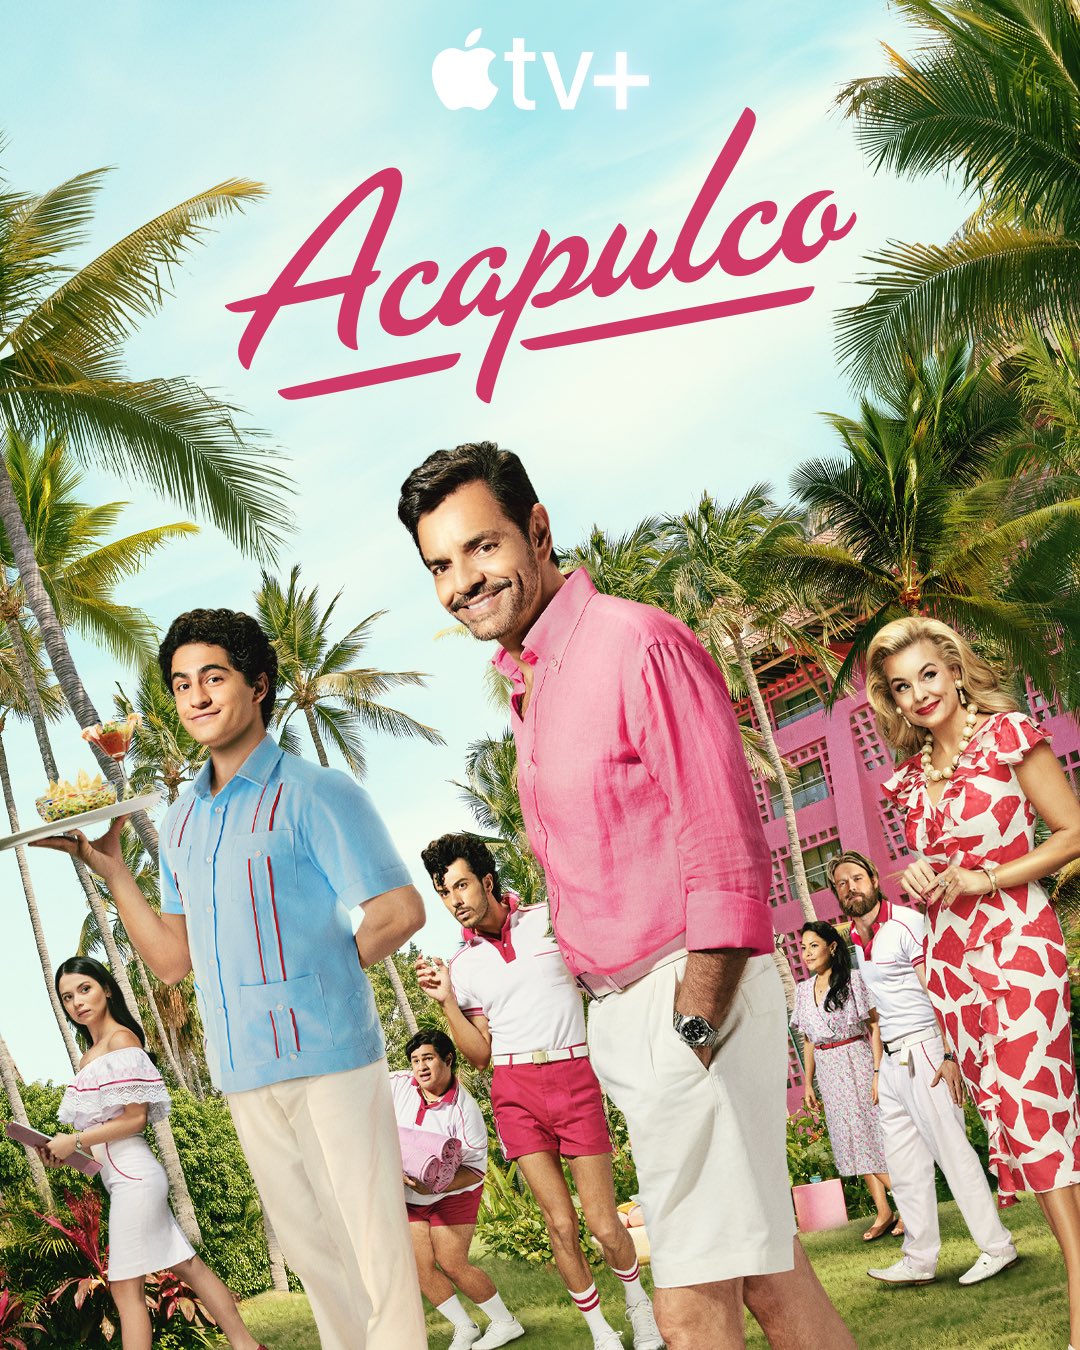 مسلسل Acapulco الموسم الثالث الحلقة 1